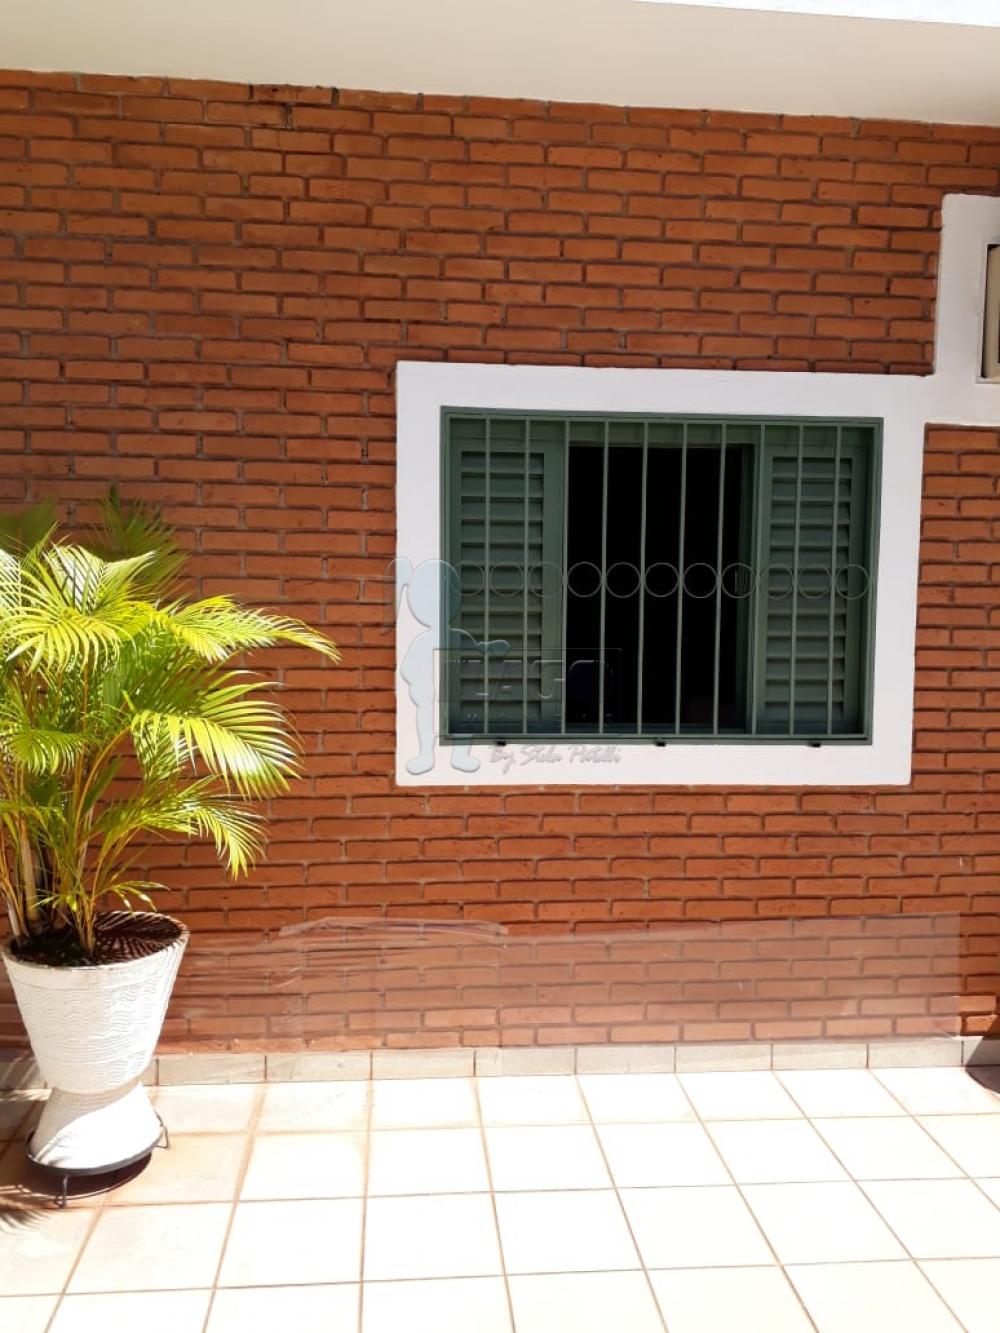 Comprar Casas / Padrão em Ribeirão Preto R$ 540.000,00 - Foto 2